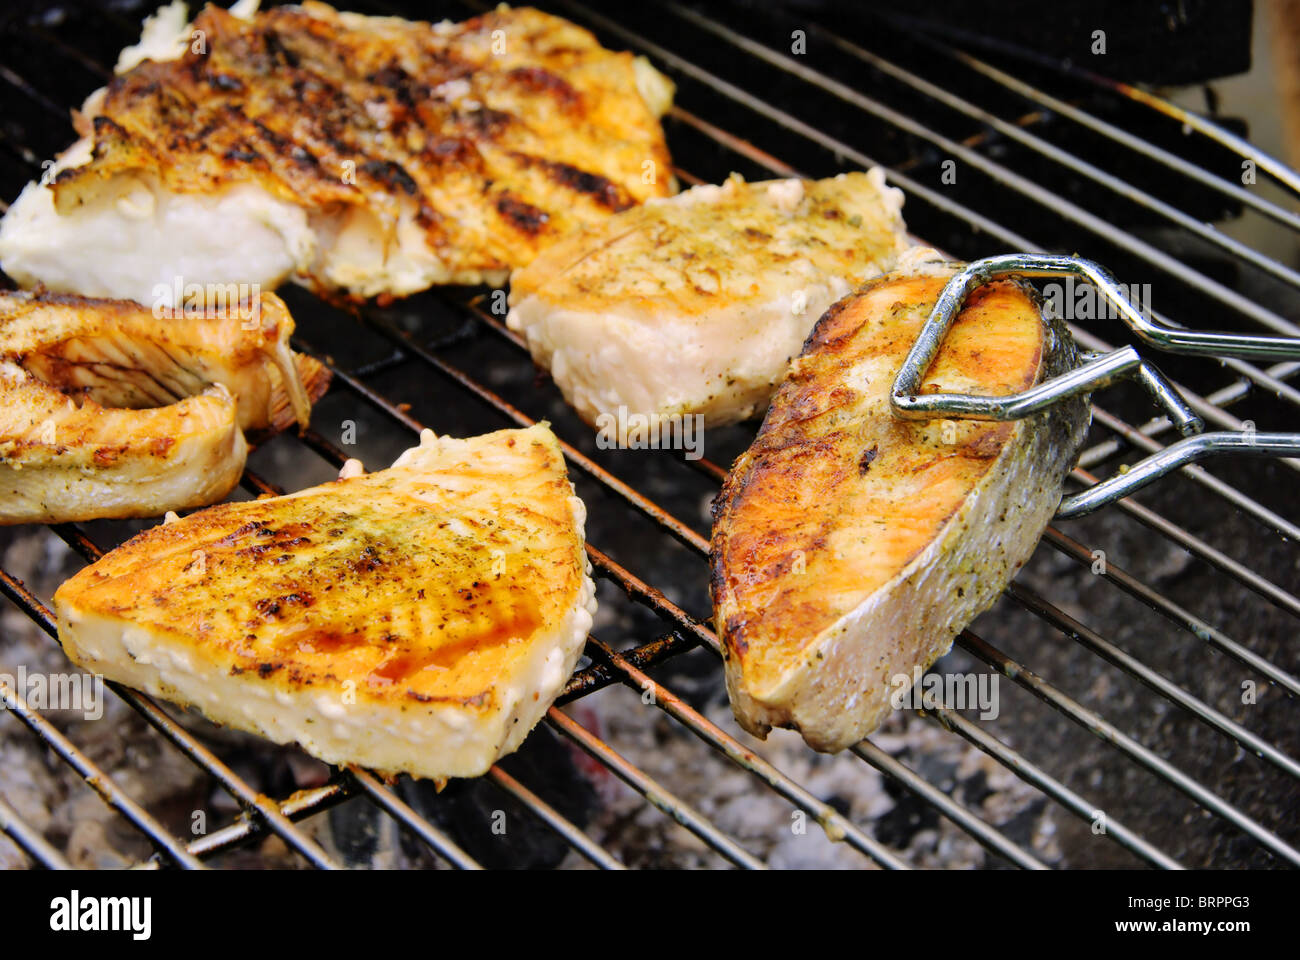 Grillen Fischsteak - Grillen Steak vom Fisch 16 Stockfoto